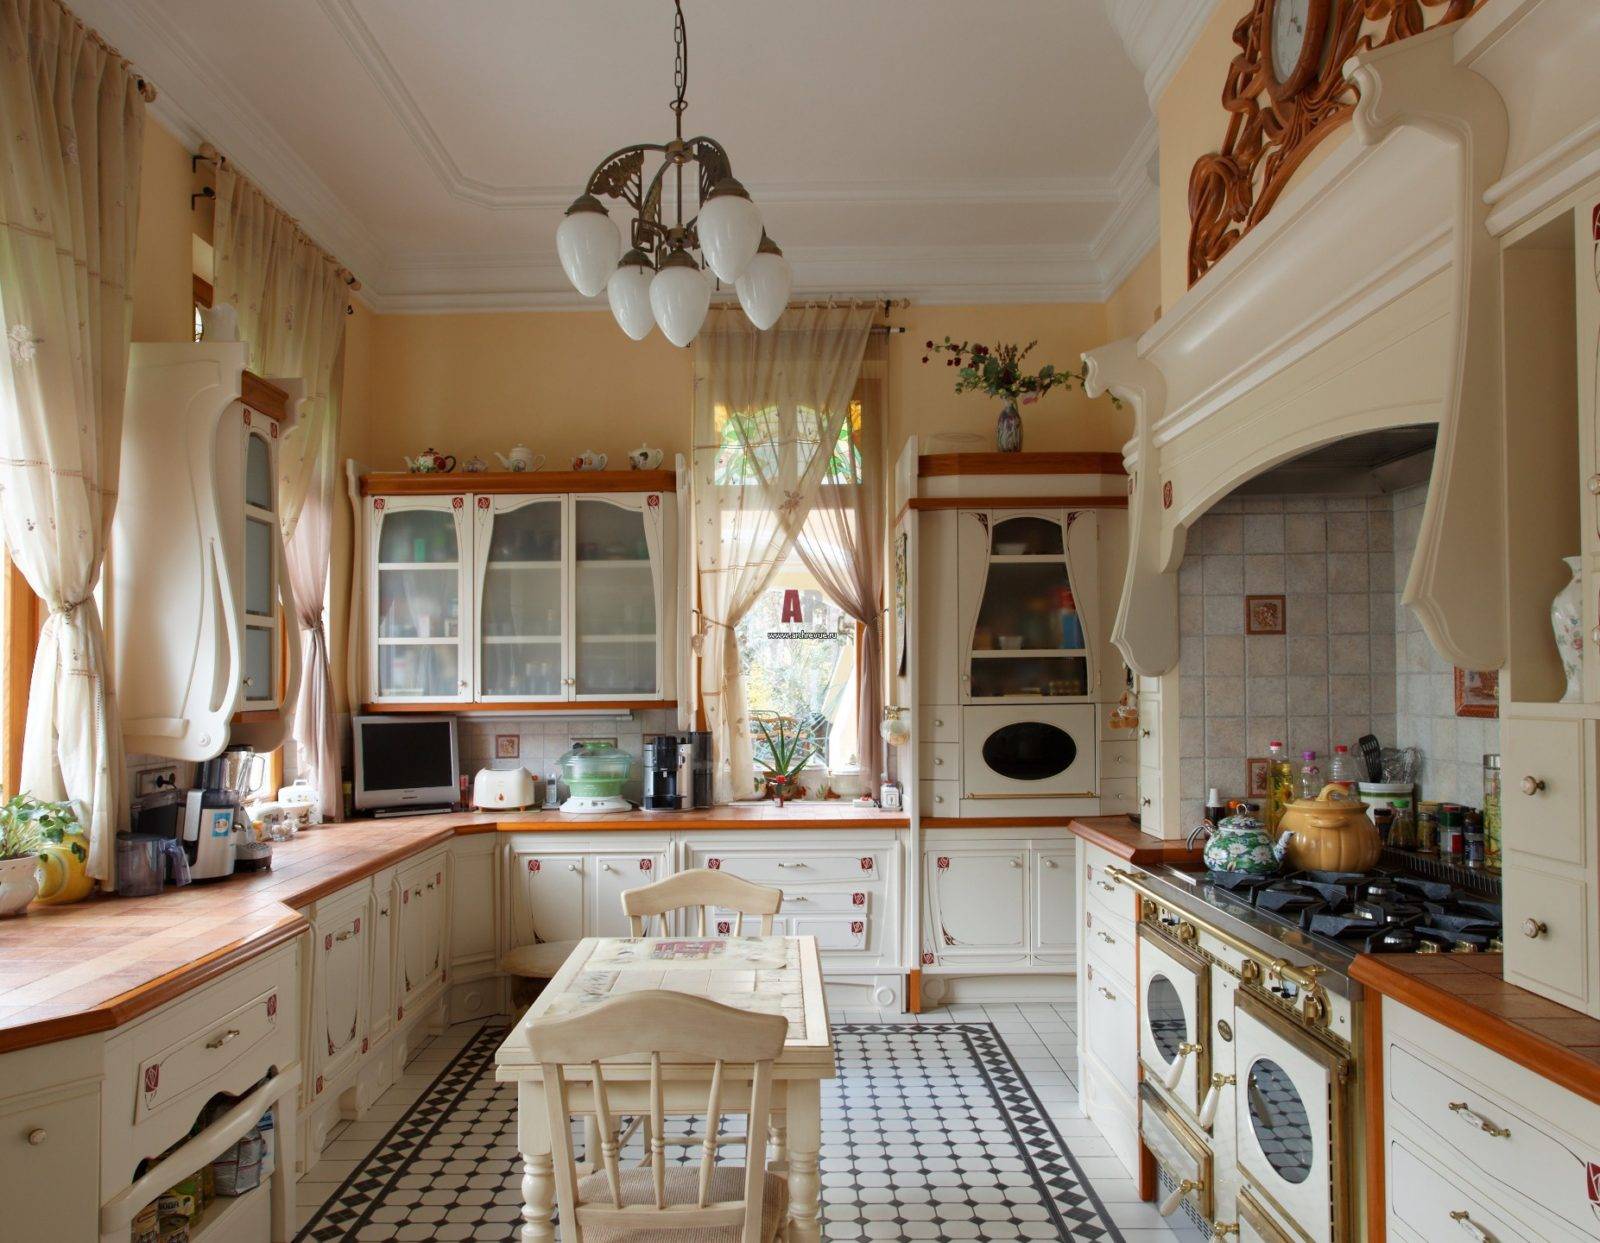 Дизайн красивых кухонь в стиле прованс: 240+ фото современных оформлений (стены, потолок, шторы)